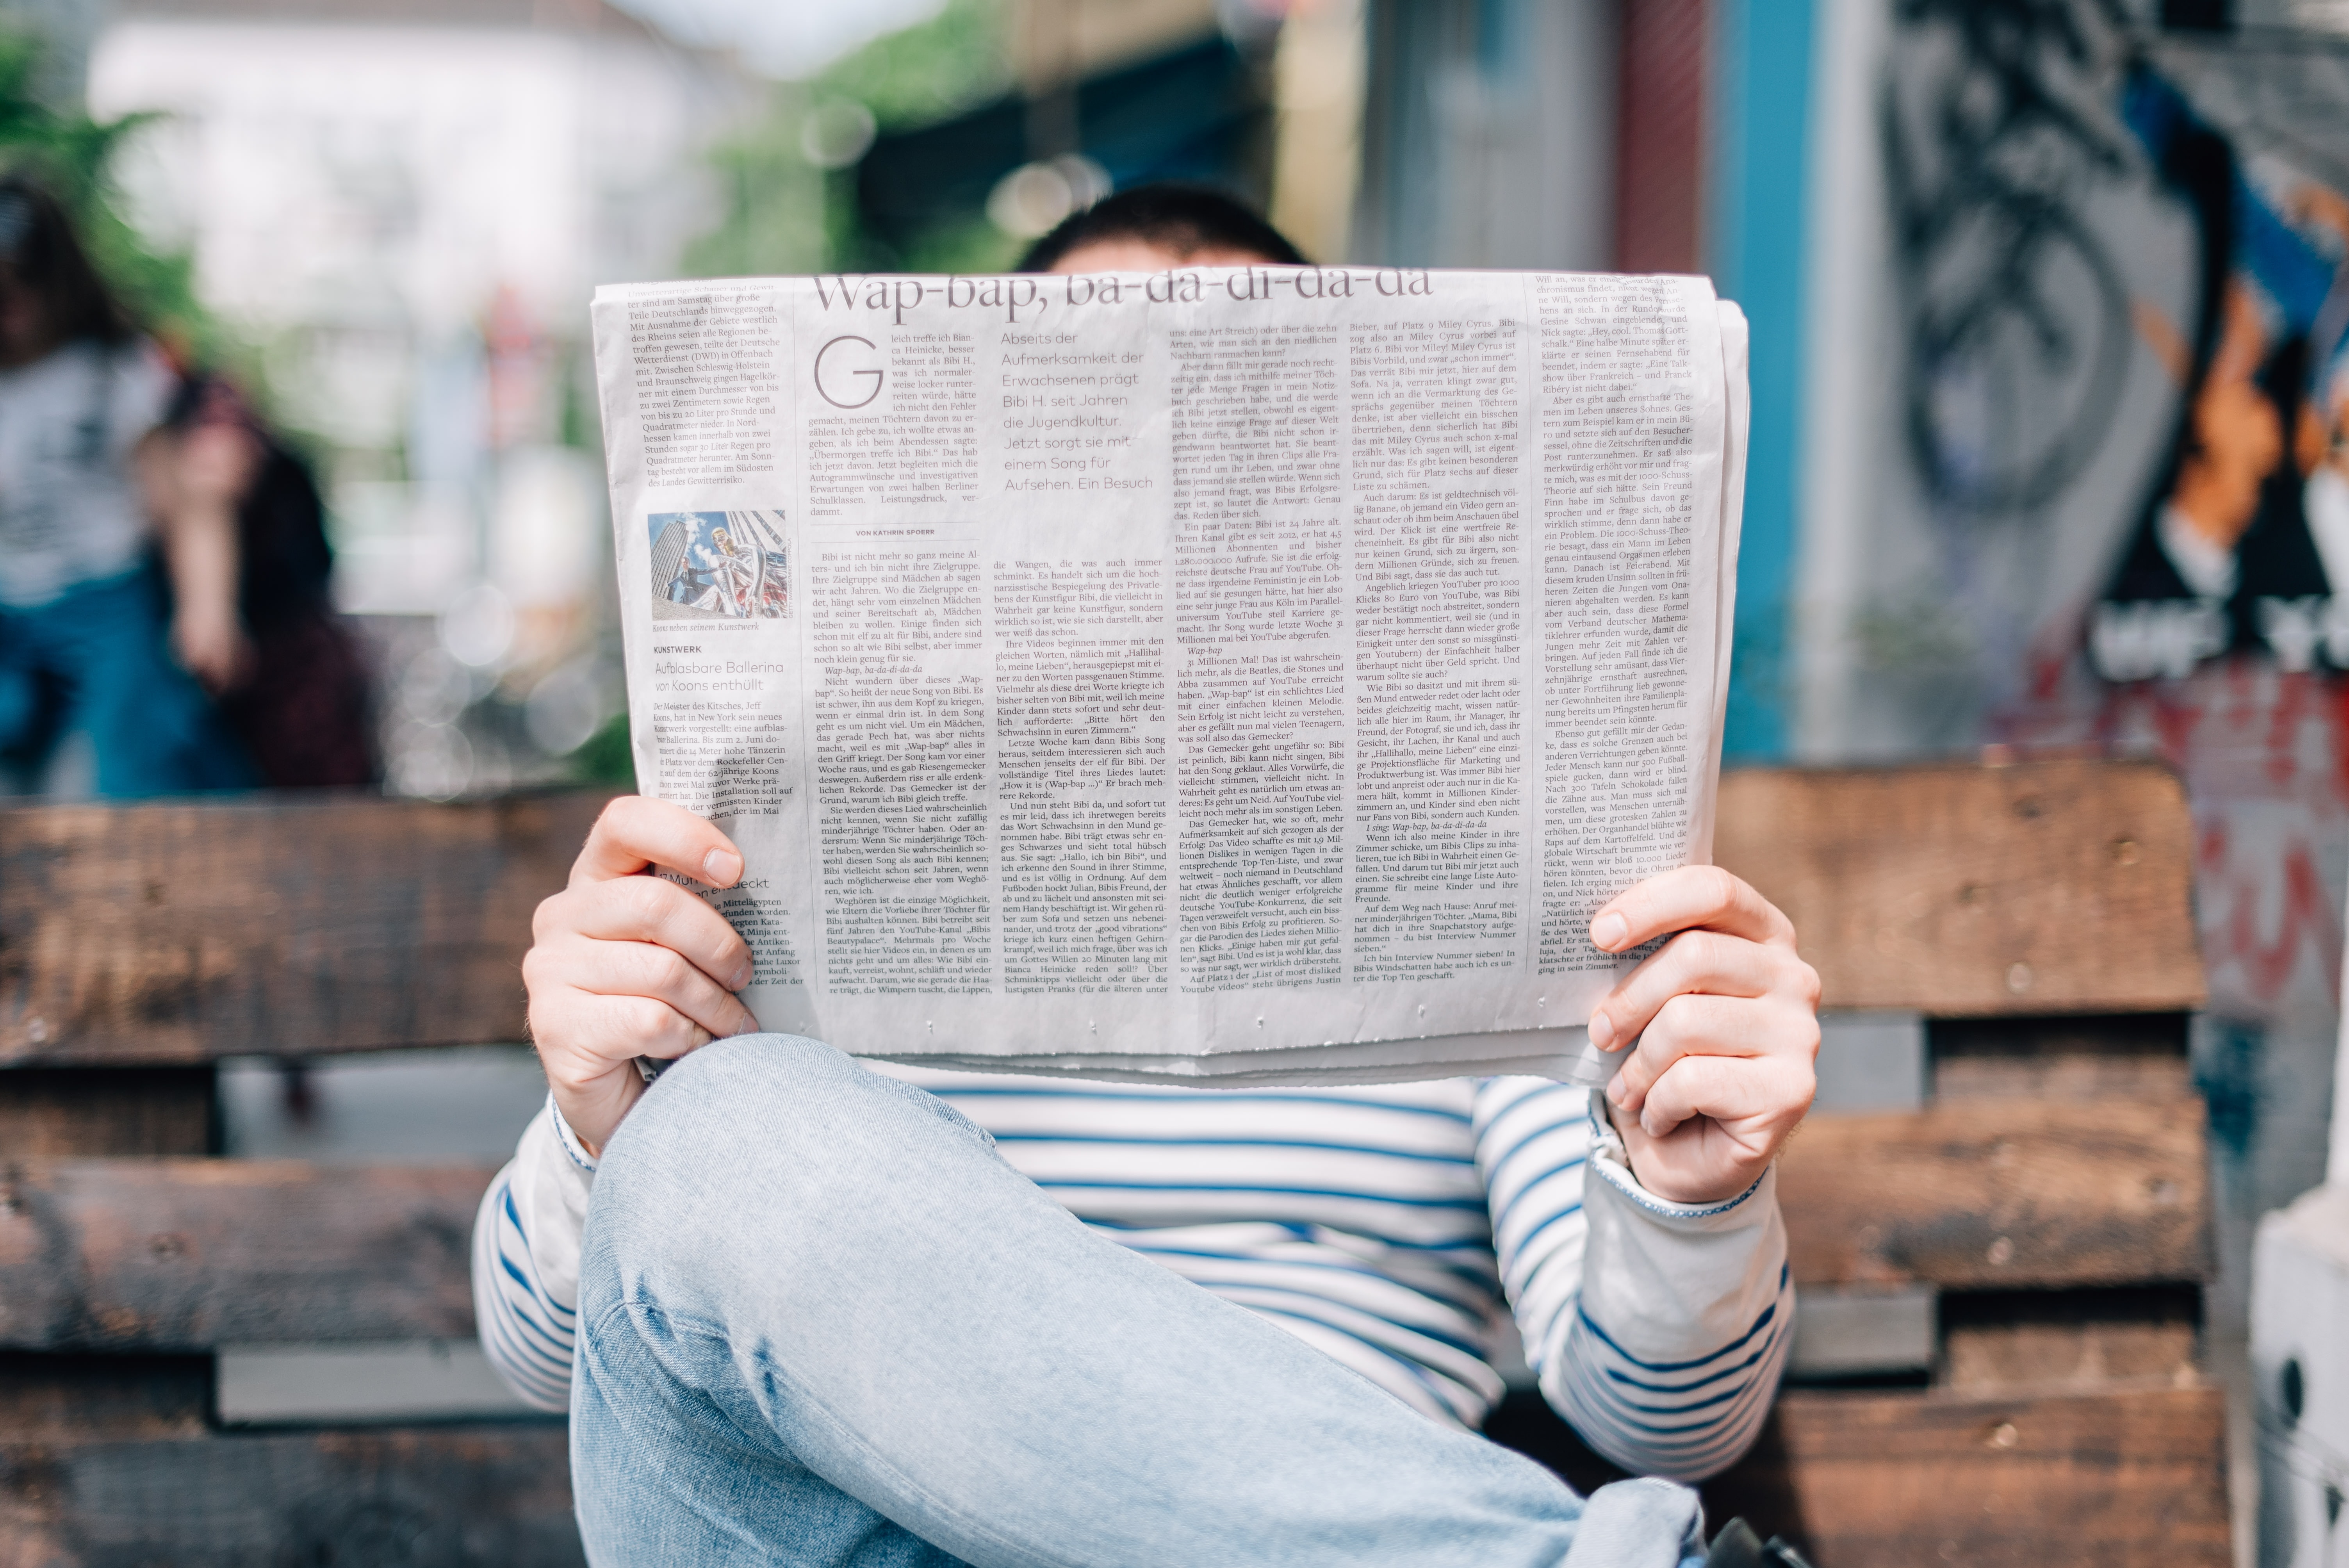 Mehr als die Hälfte der Bevölkerung liest täglich die gedruckte Zeitung